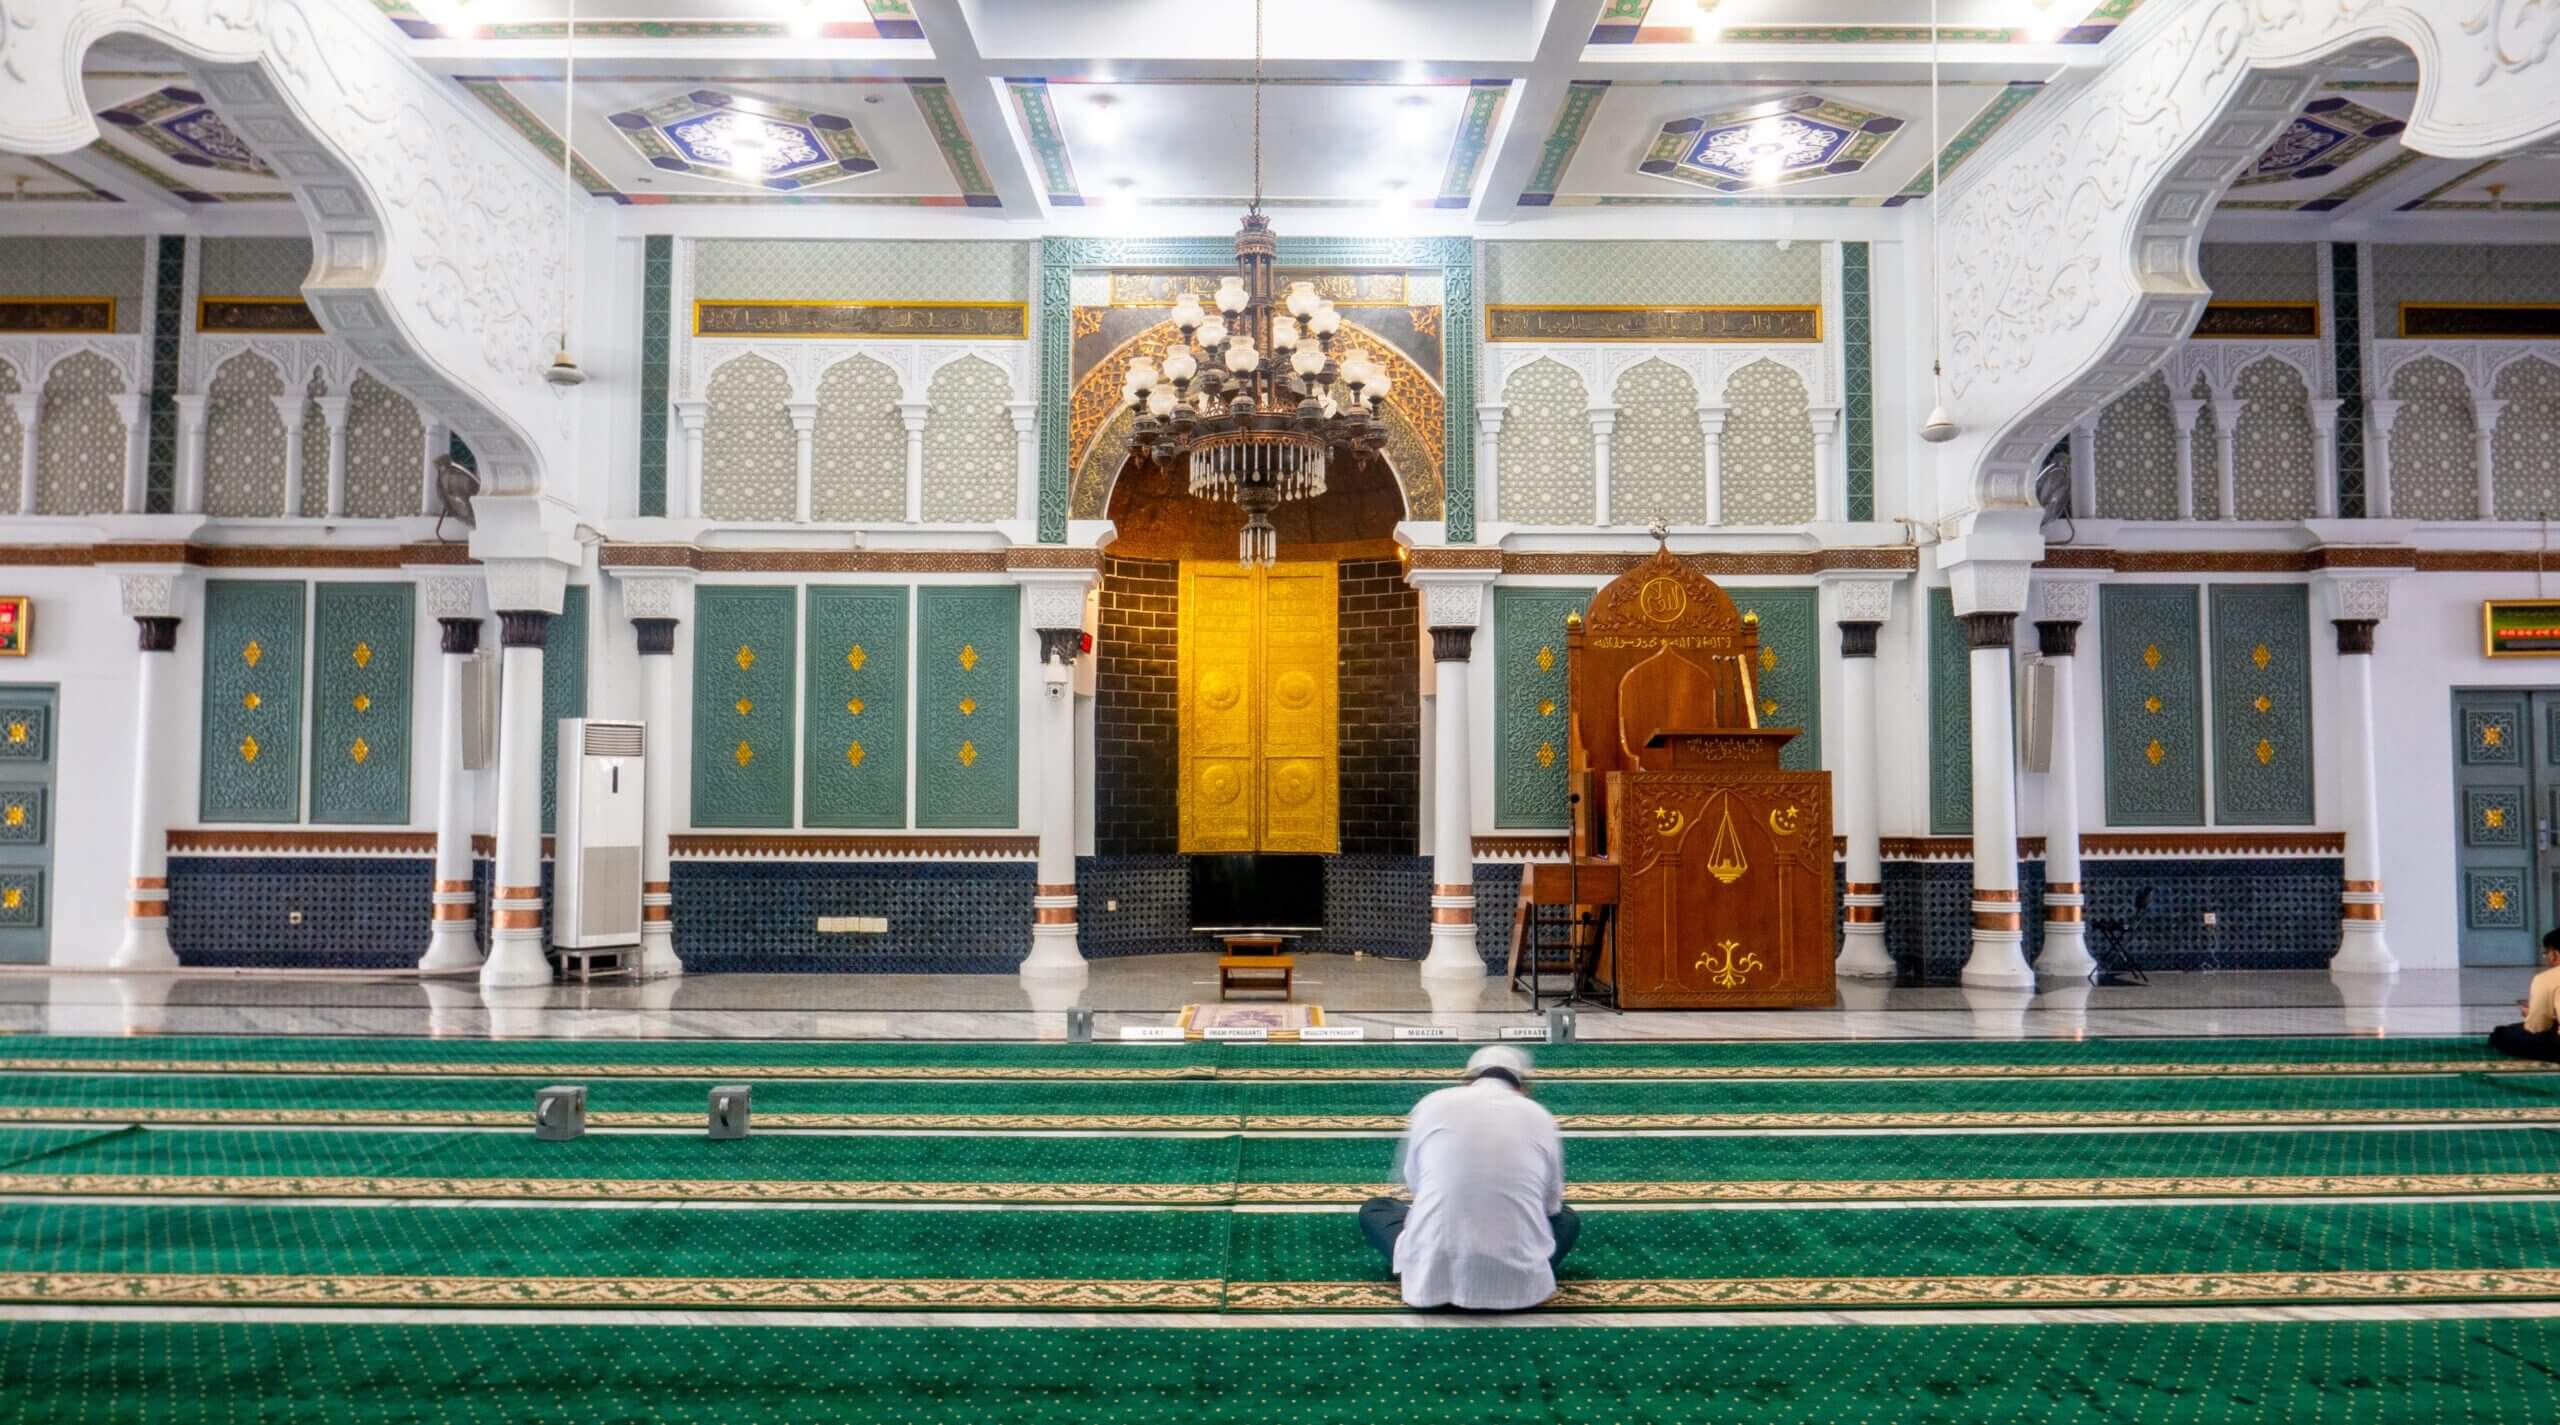 المجلس الإسلامي البريطاني يصدر دليلًا لأمان المساجد وحمايتها